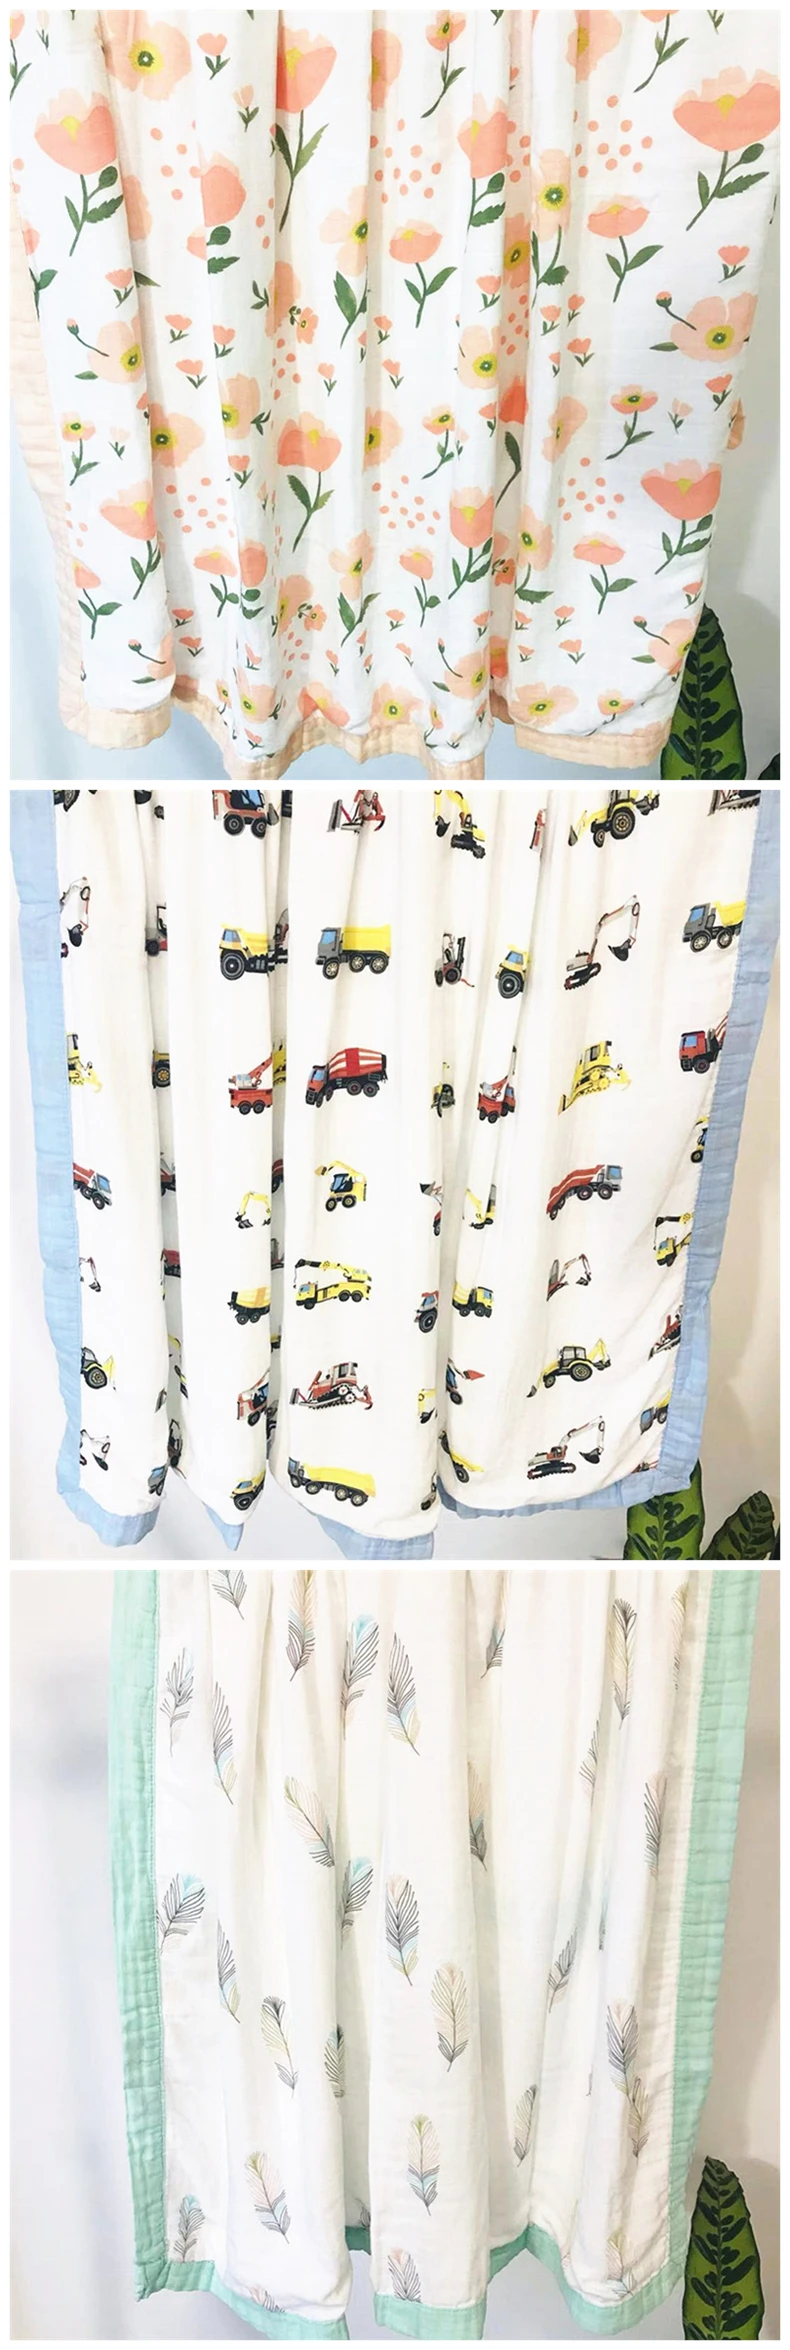 Многофункциональное 4 слойное муслиновое детское одеяло 125*125 см детское банное полотенце для младенцев Пеленальное Одеяло младенческое